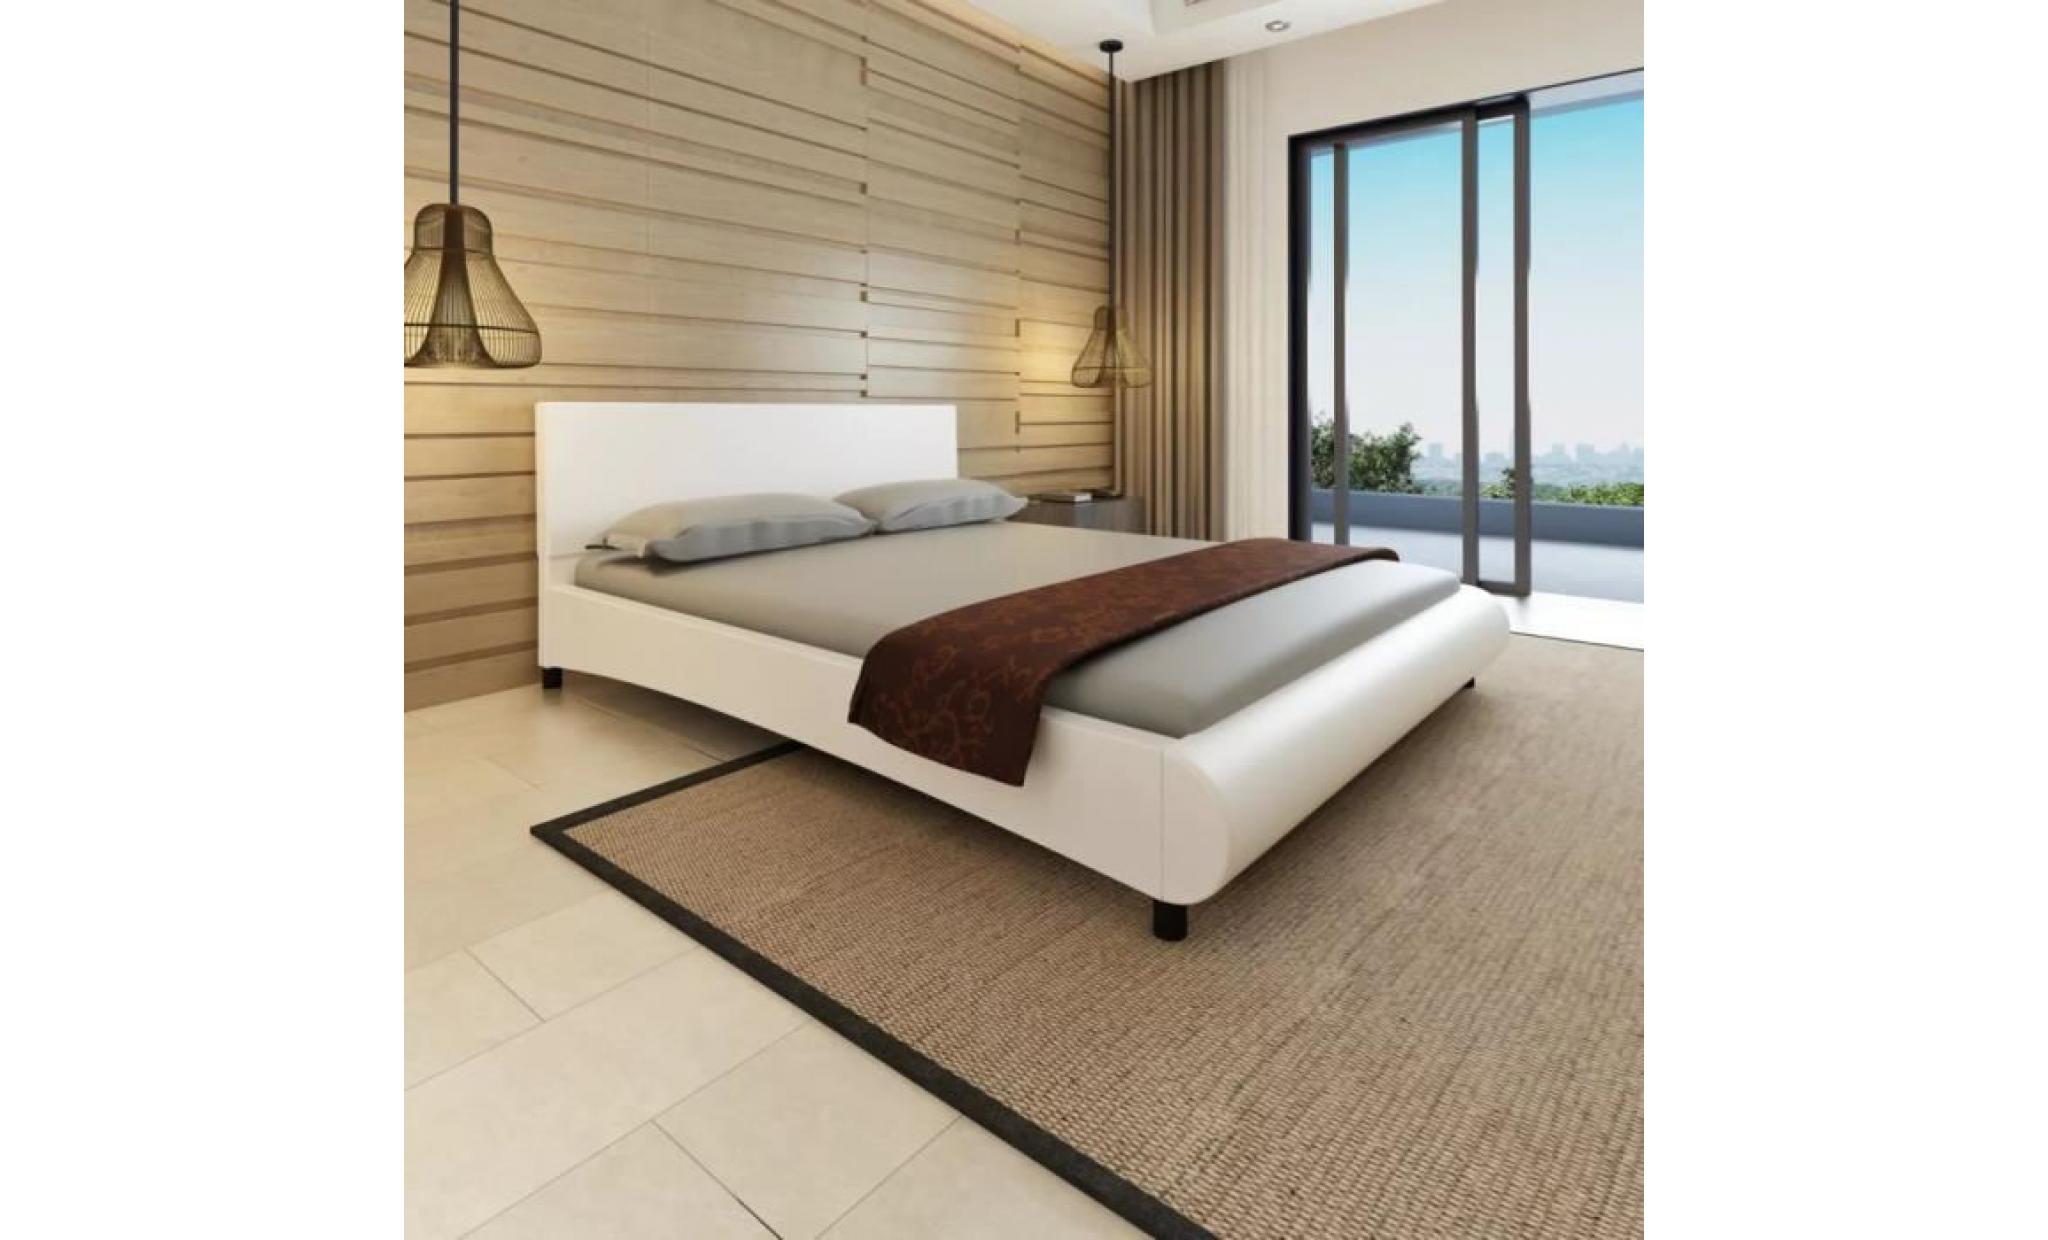 lit 160 x 200 cm structure de lit lit adulte lit enfant lit contemporain scandinave cuir artificiel blanc